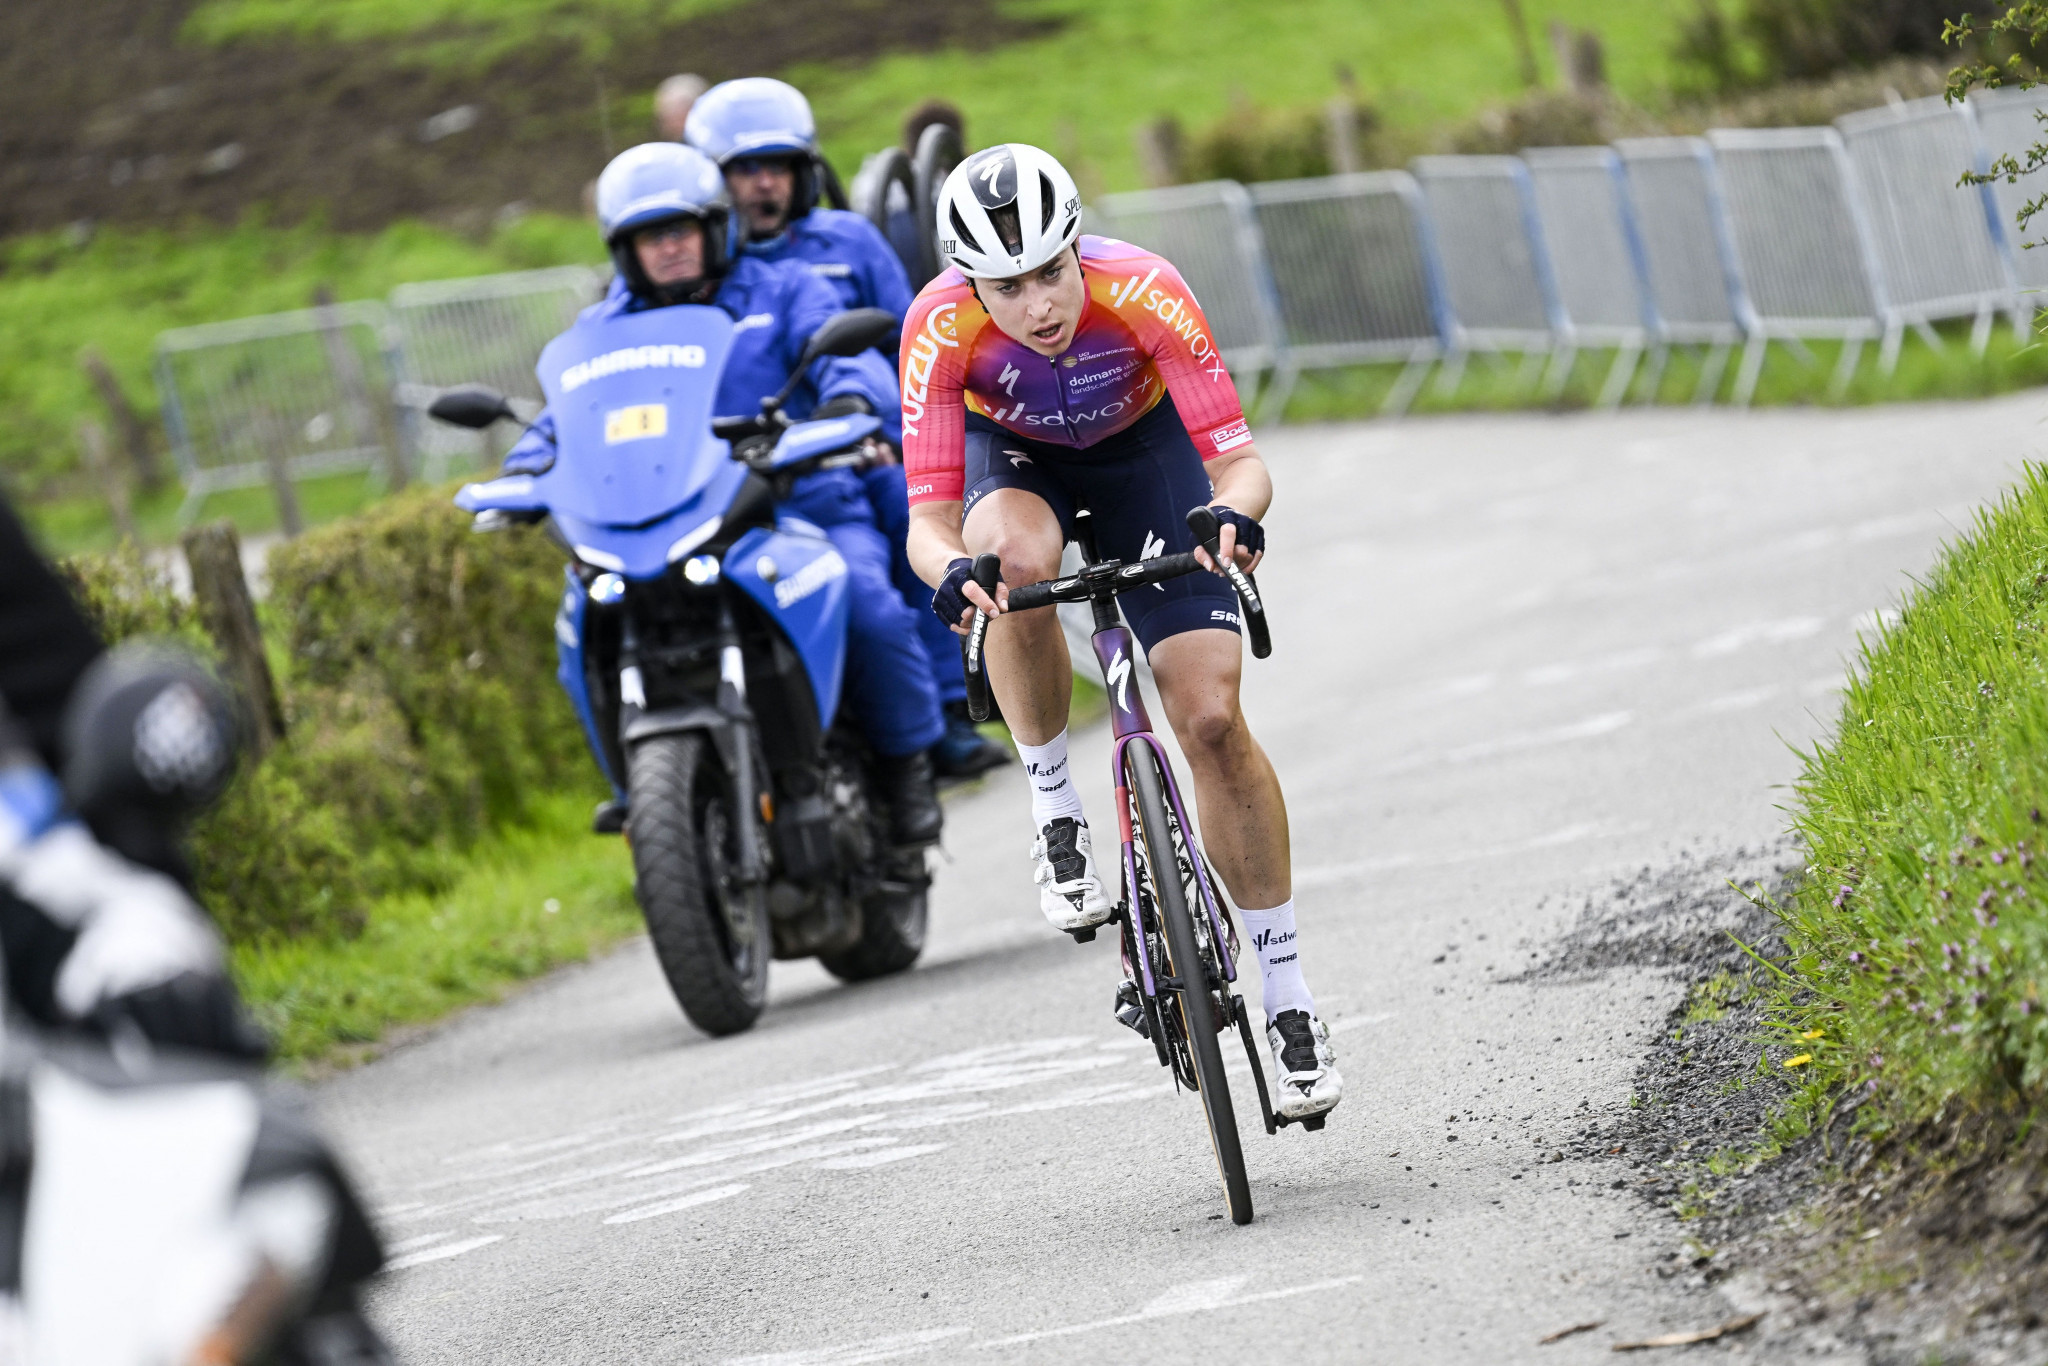 Reusser clinches home victory at Tour de Suisse Women